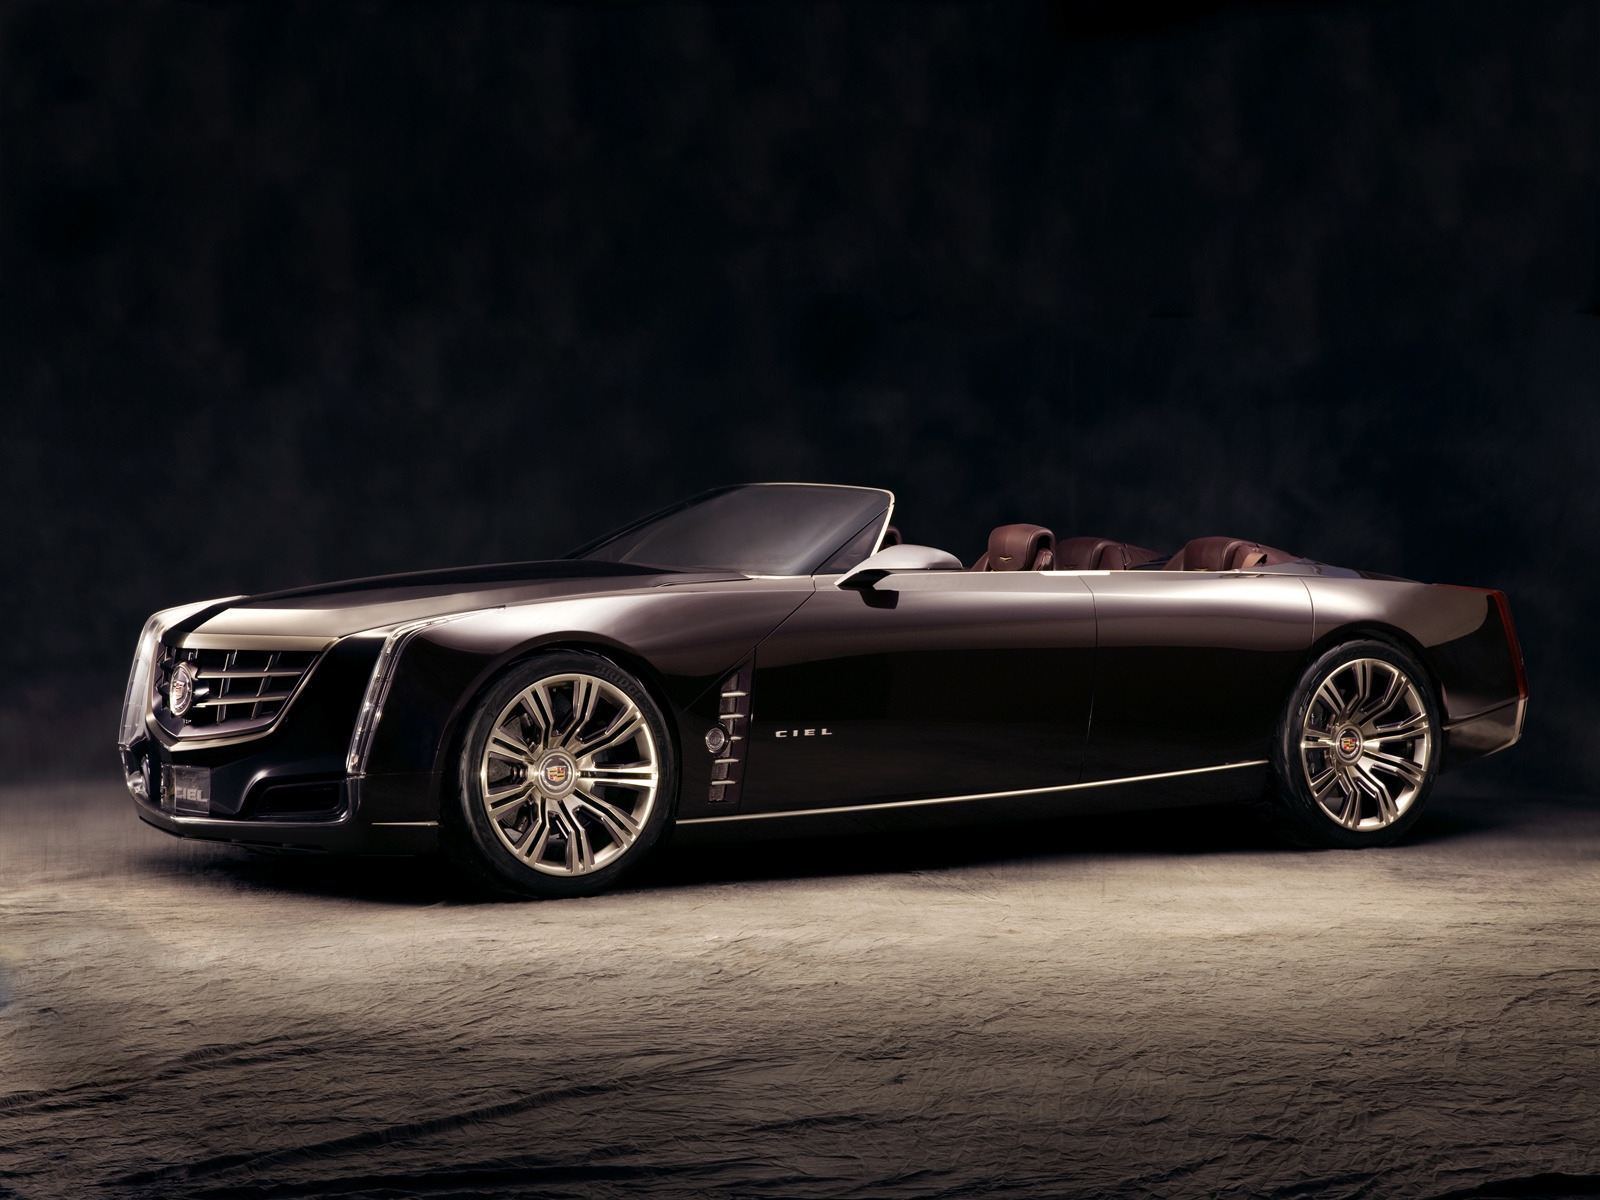 2011 Cadillac Ciel for 1600 x 1200 resolution